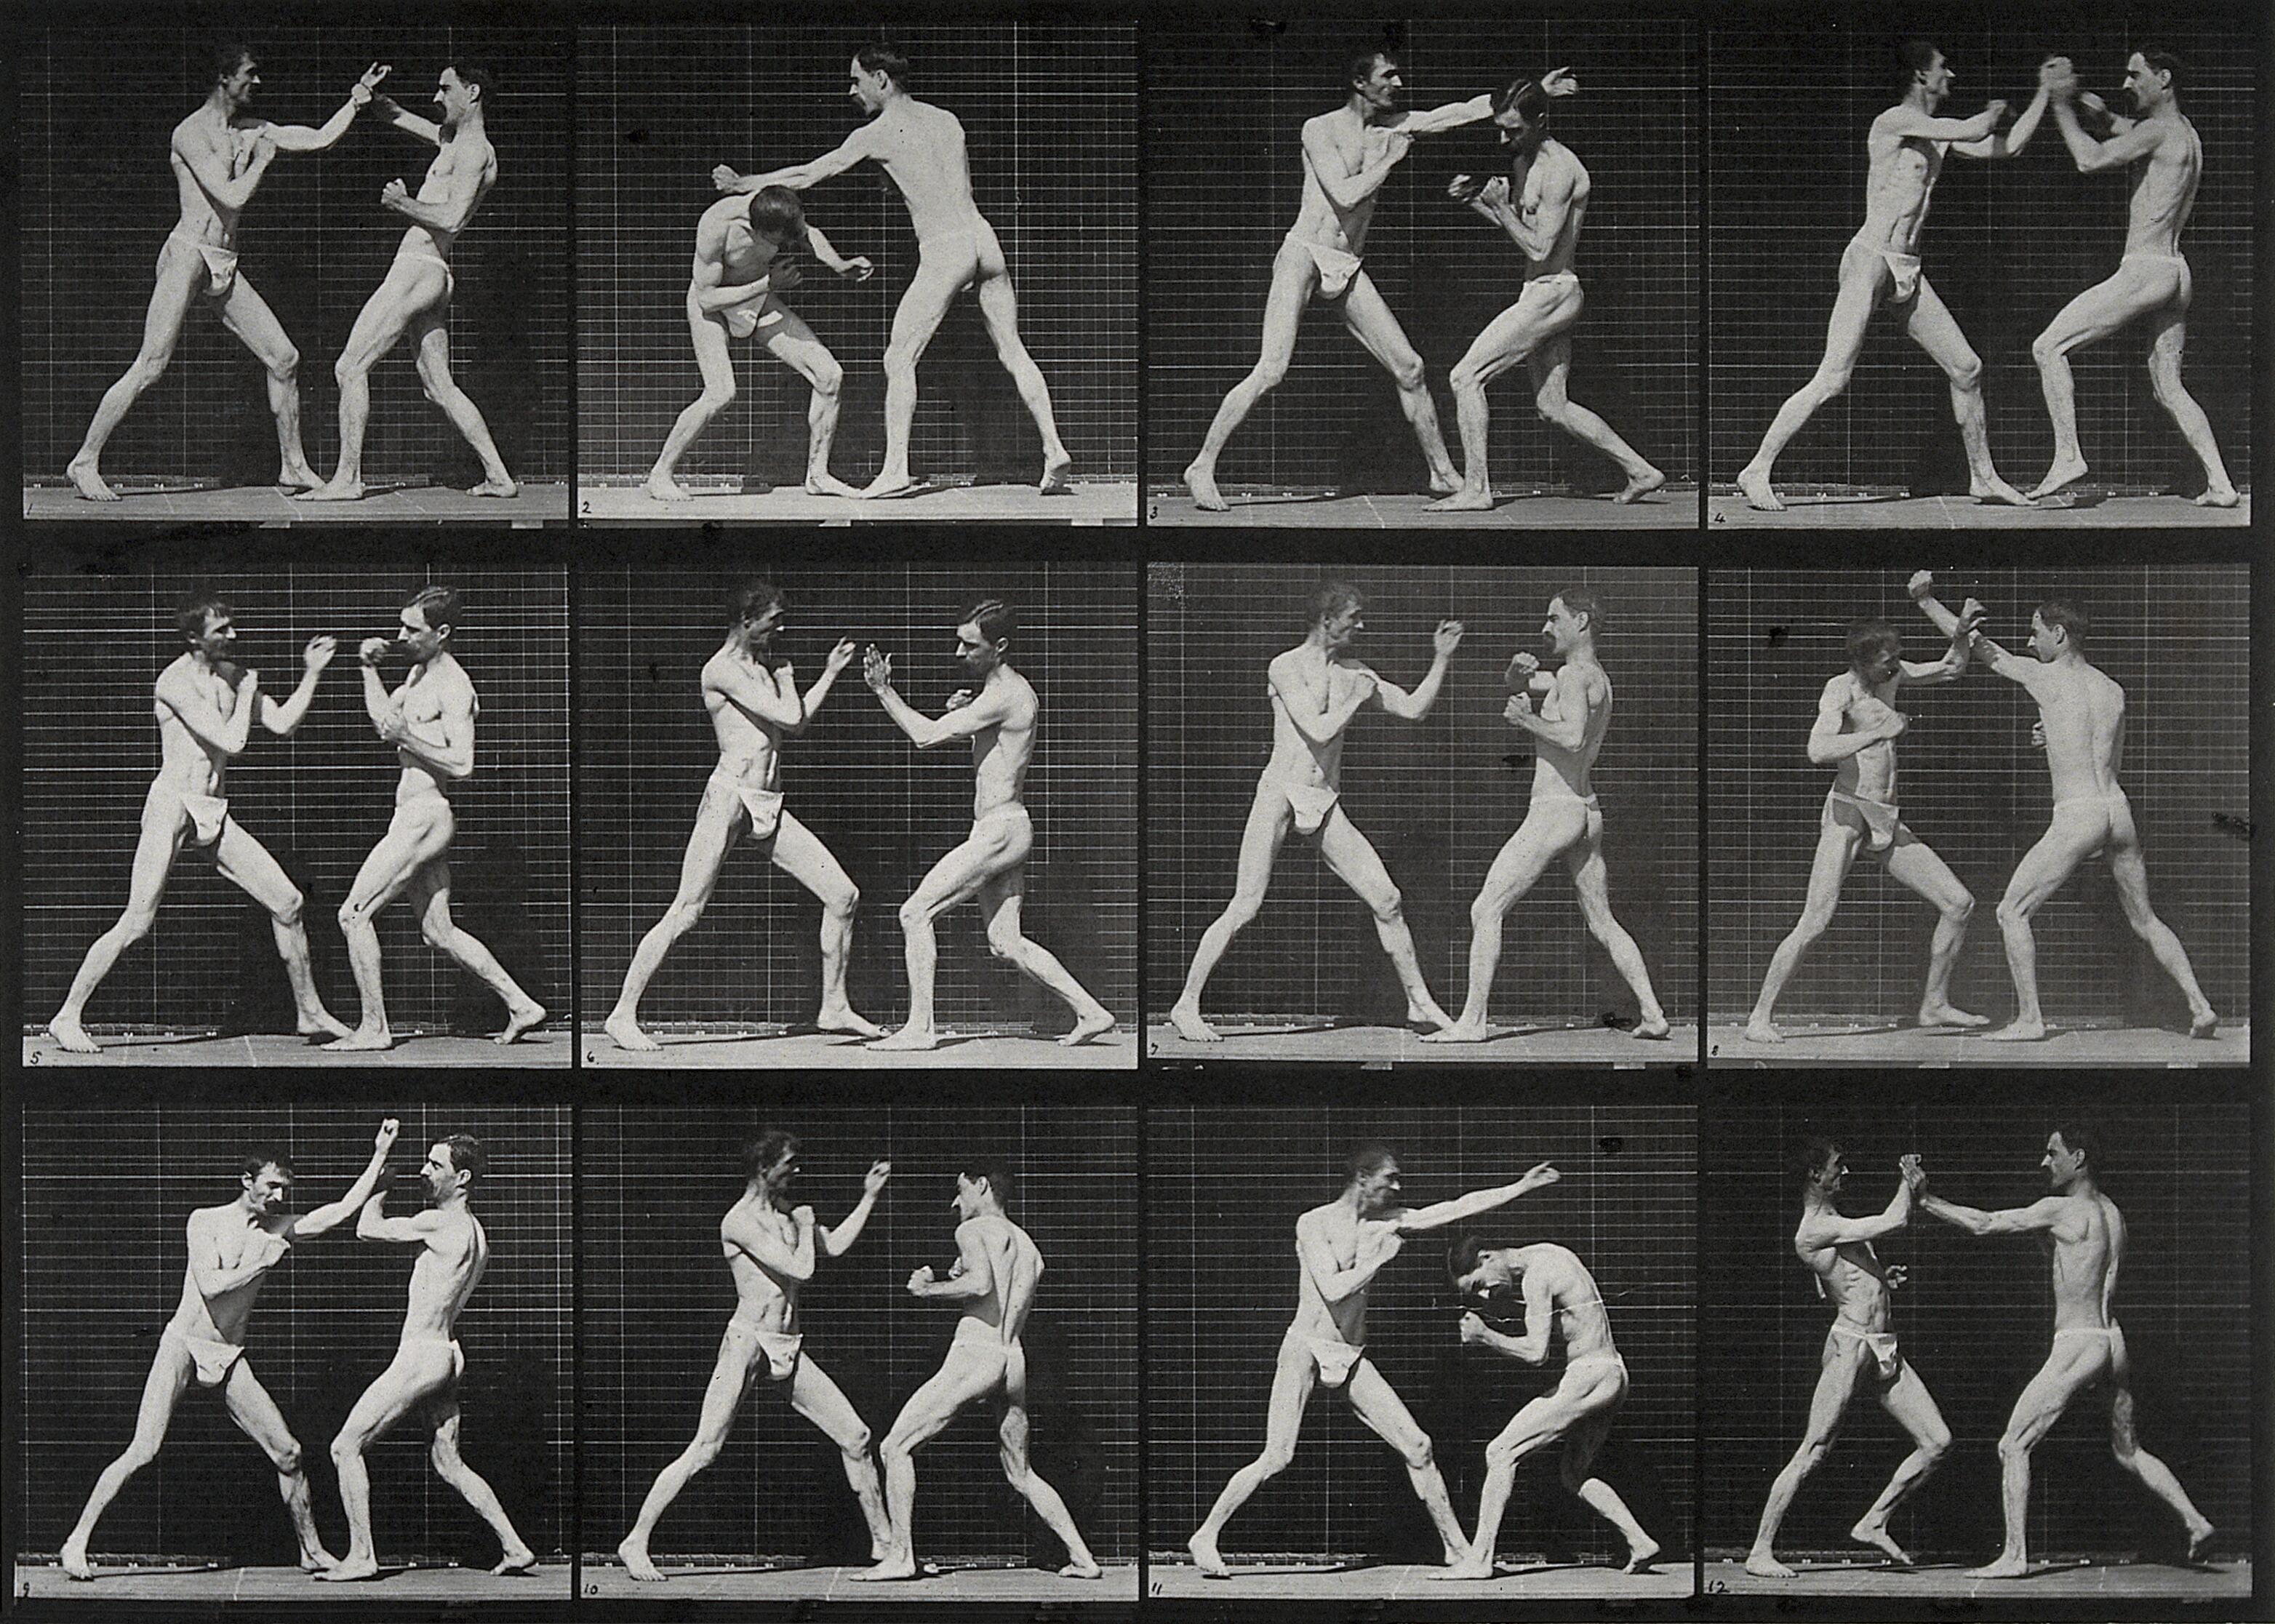 दो पुरुष मुक्केबाजी करते हुए by Eadweard Muybridge - 1887 